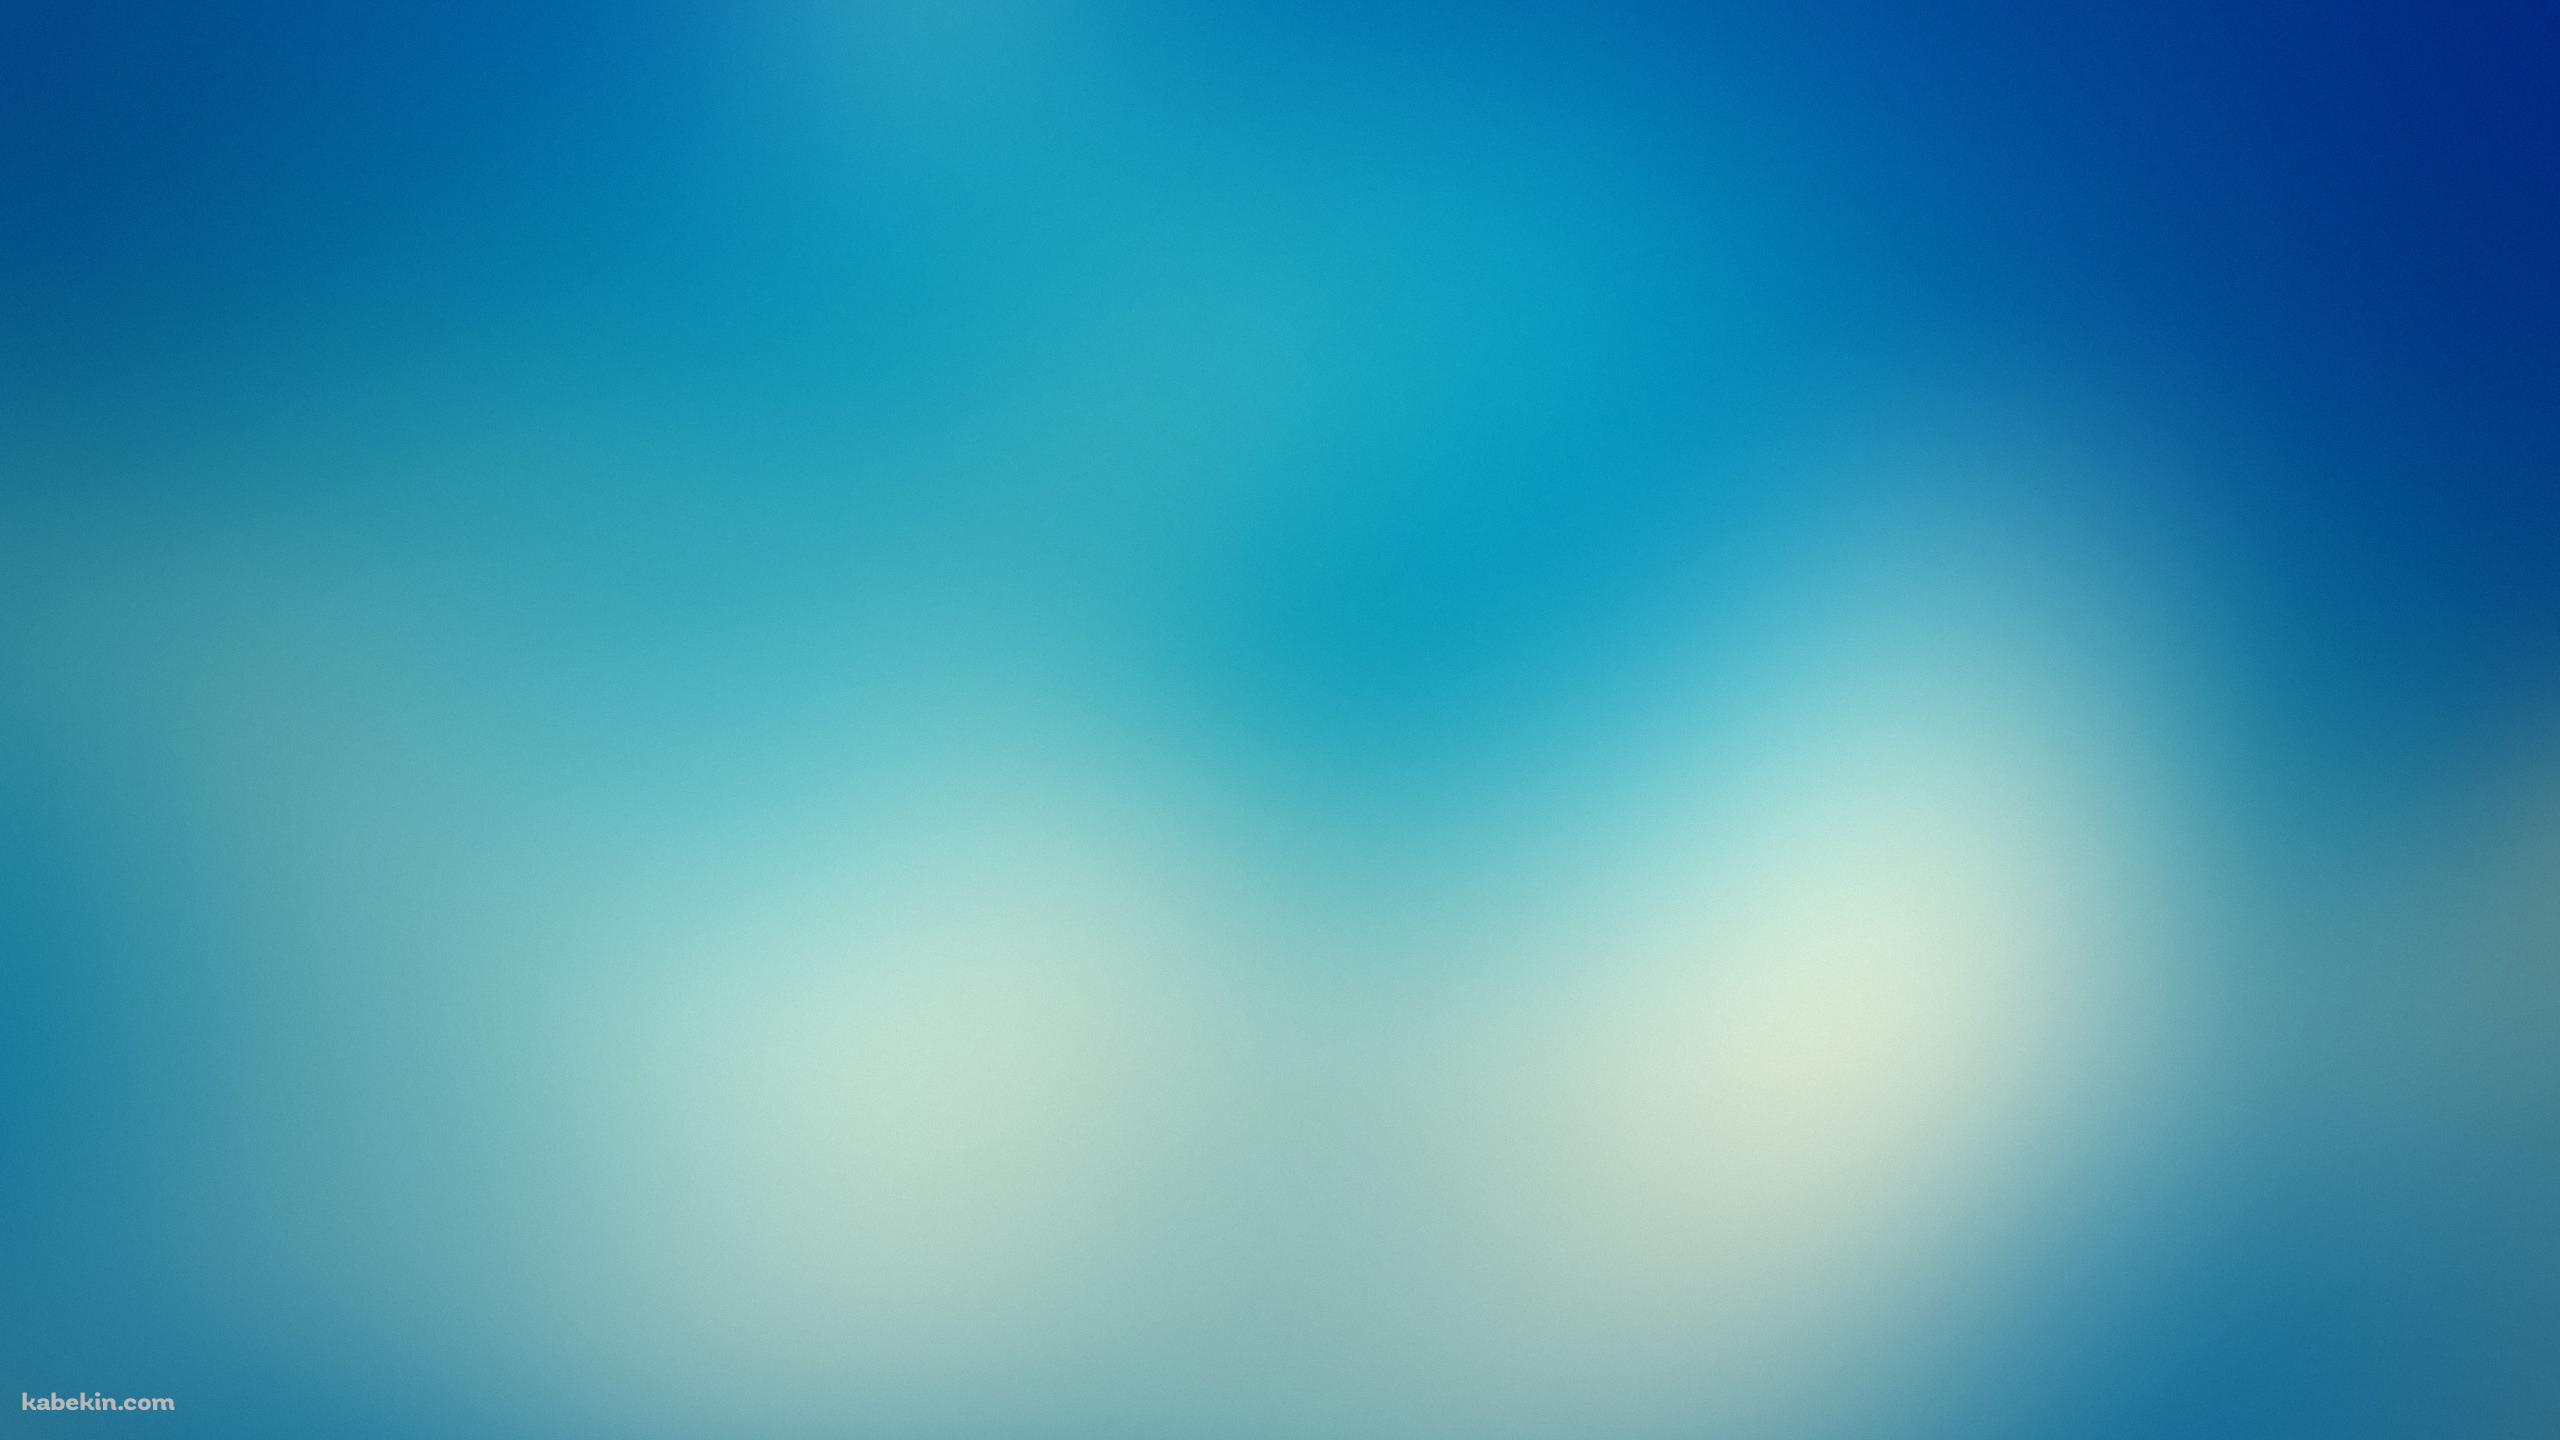 青の濃淡のあるボヤけた壁紙の壁紙(2560px x 1440px) 高画質 PC・デスクトップ用